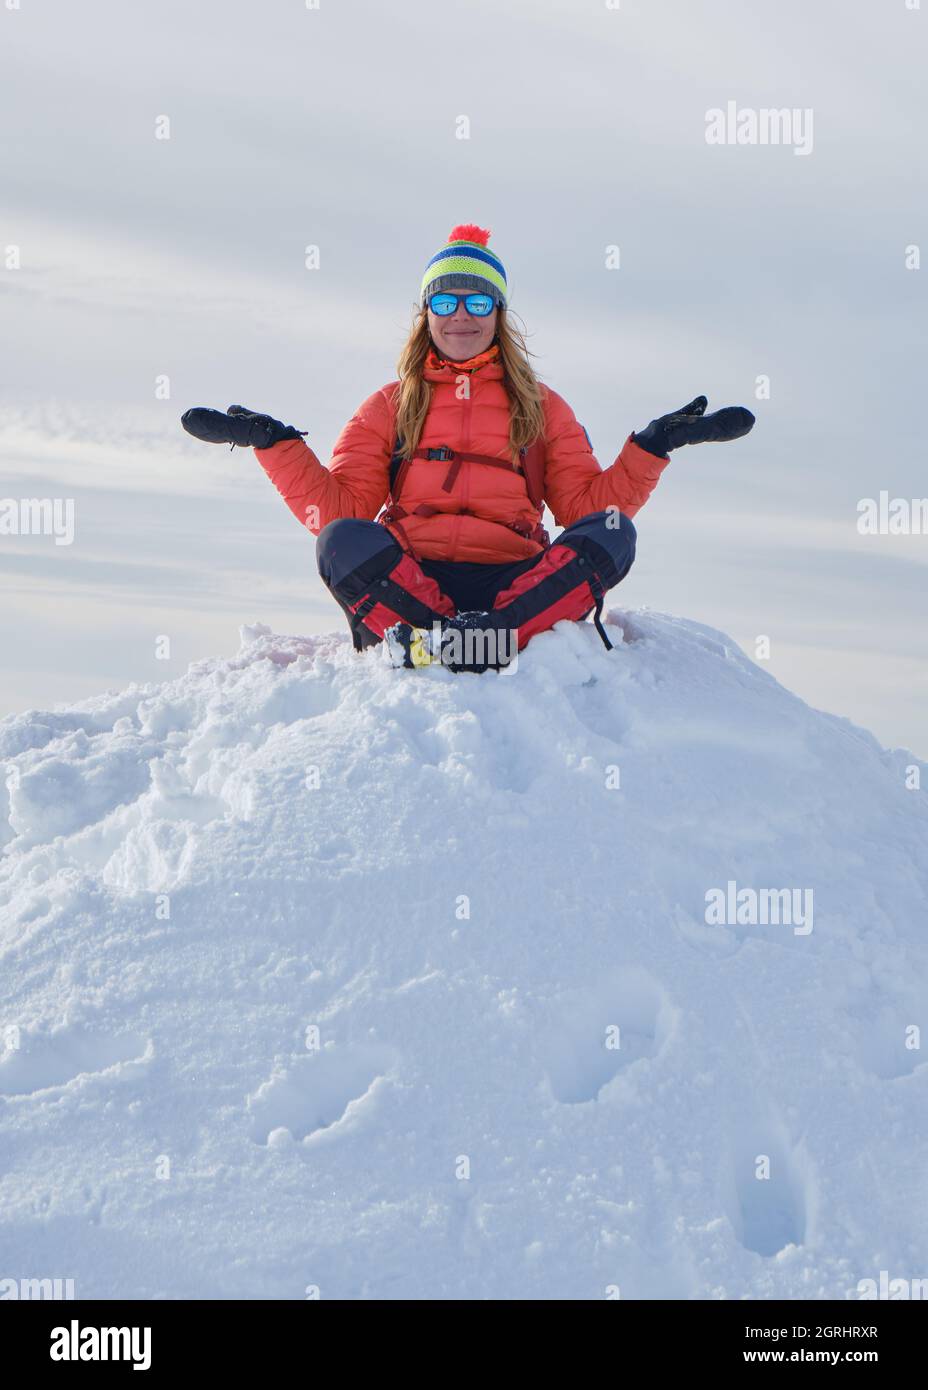 Femme randonneur portant des vêtements chauds d'hiver se trouve sur la pile de neige avec ses bras étirés et ses jambes croisées, heureux et souriant. Sommet, haut, goa Banque D'Images